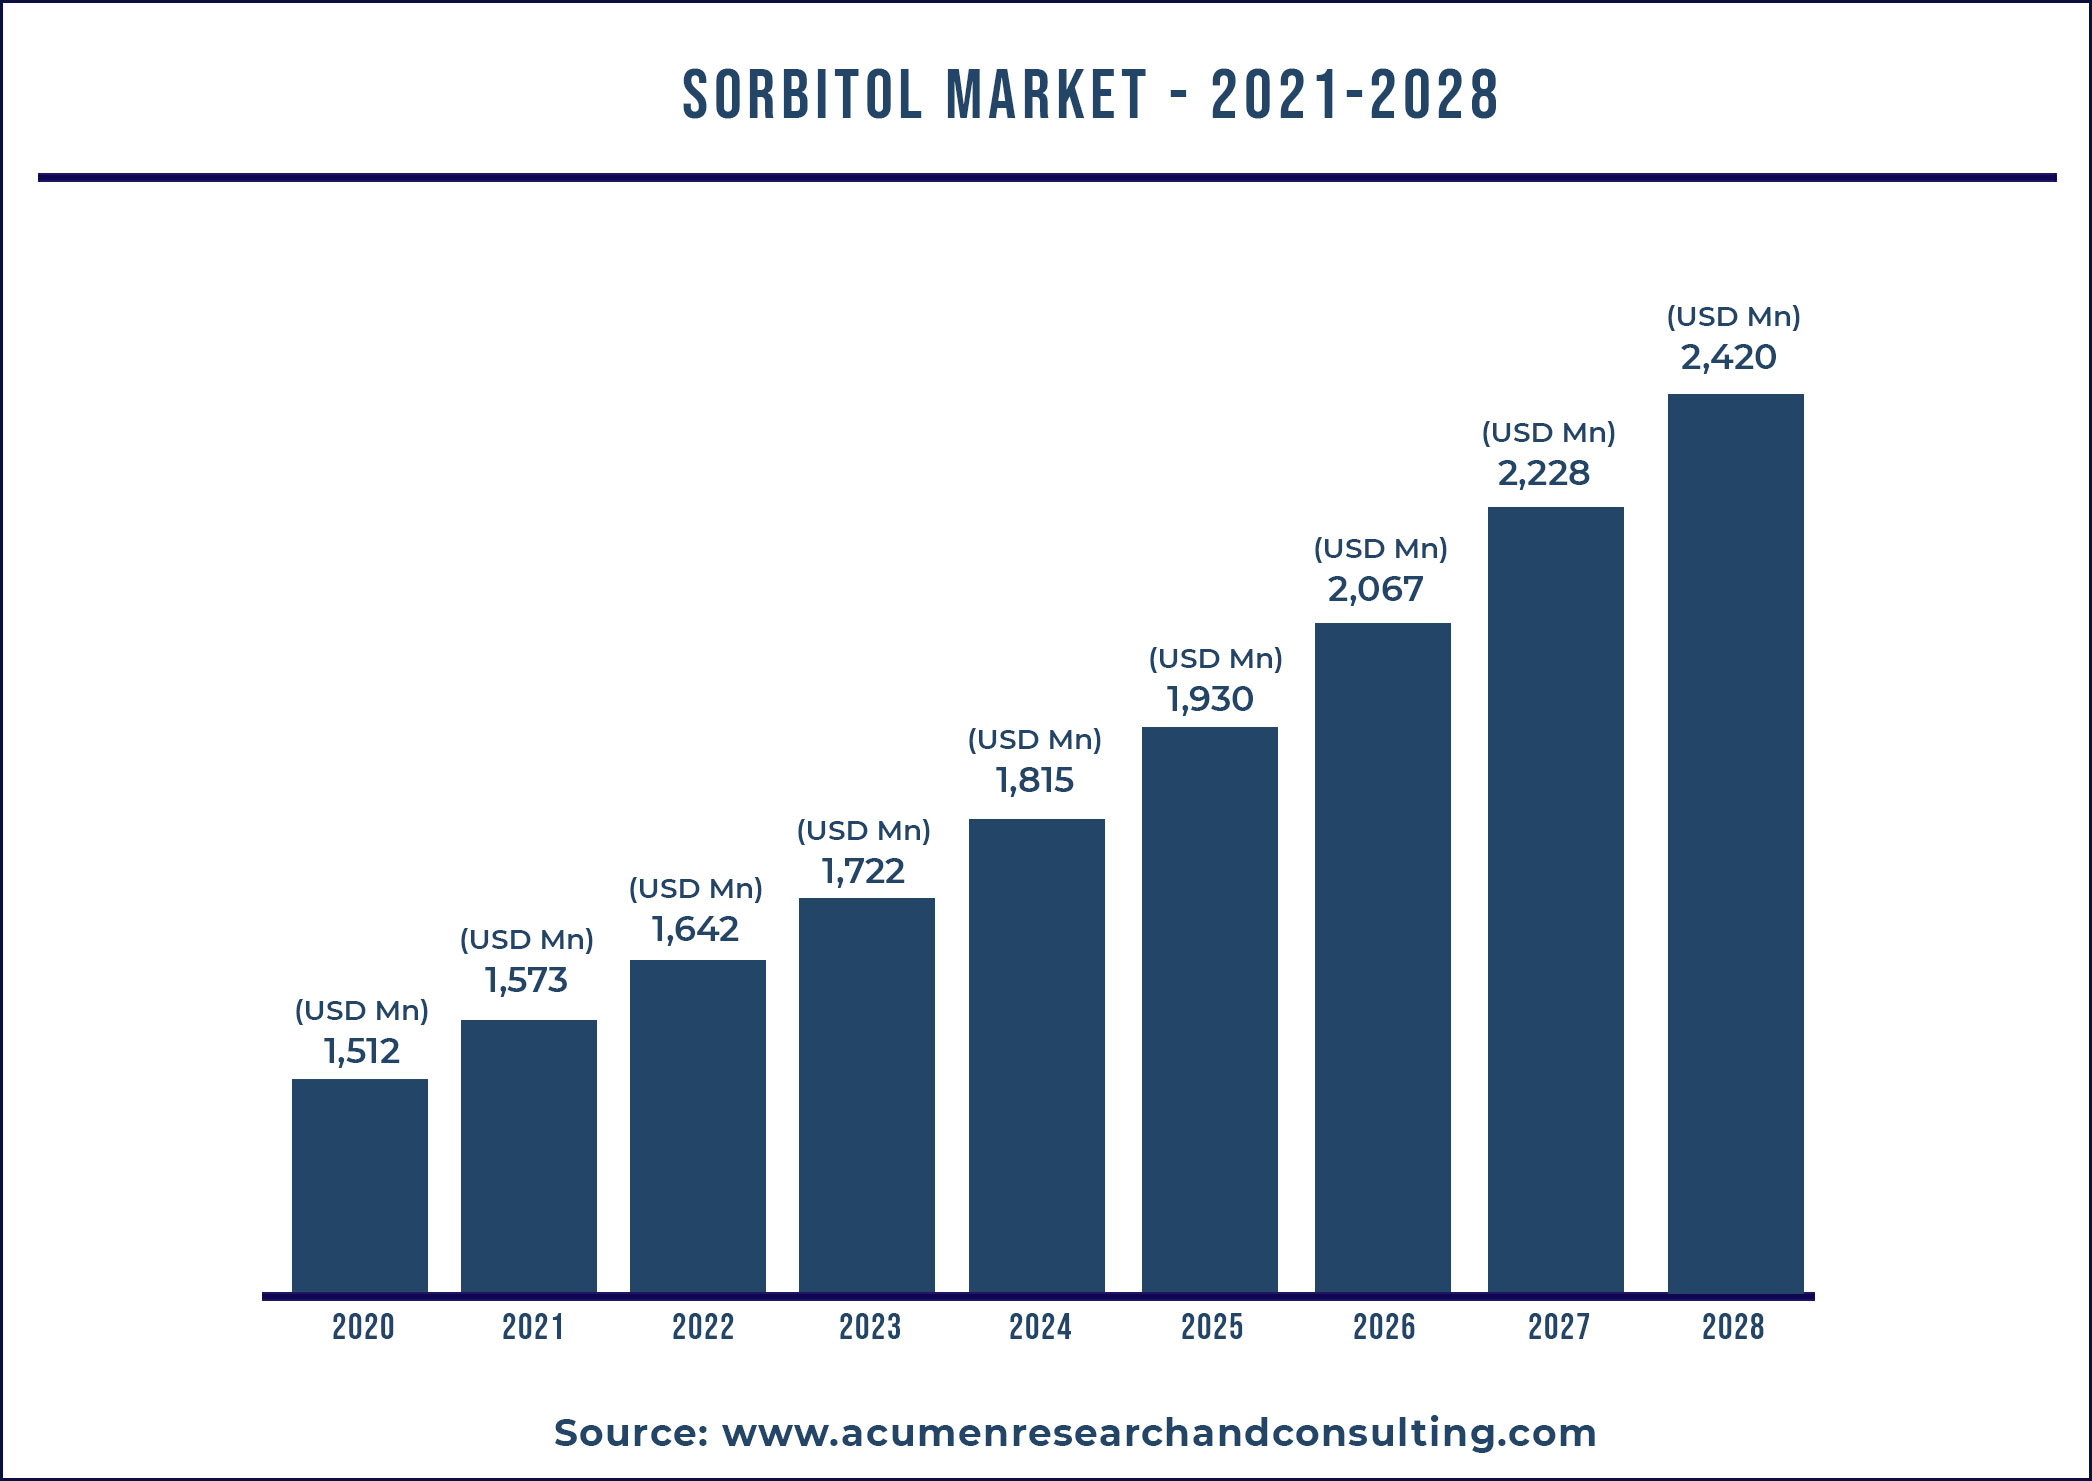 Sorbitol Market 2021 - 2028